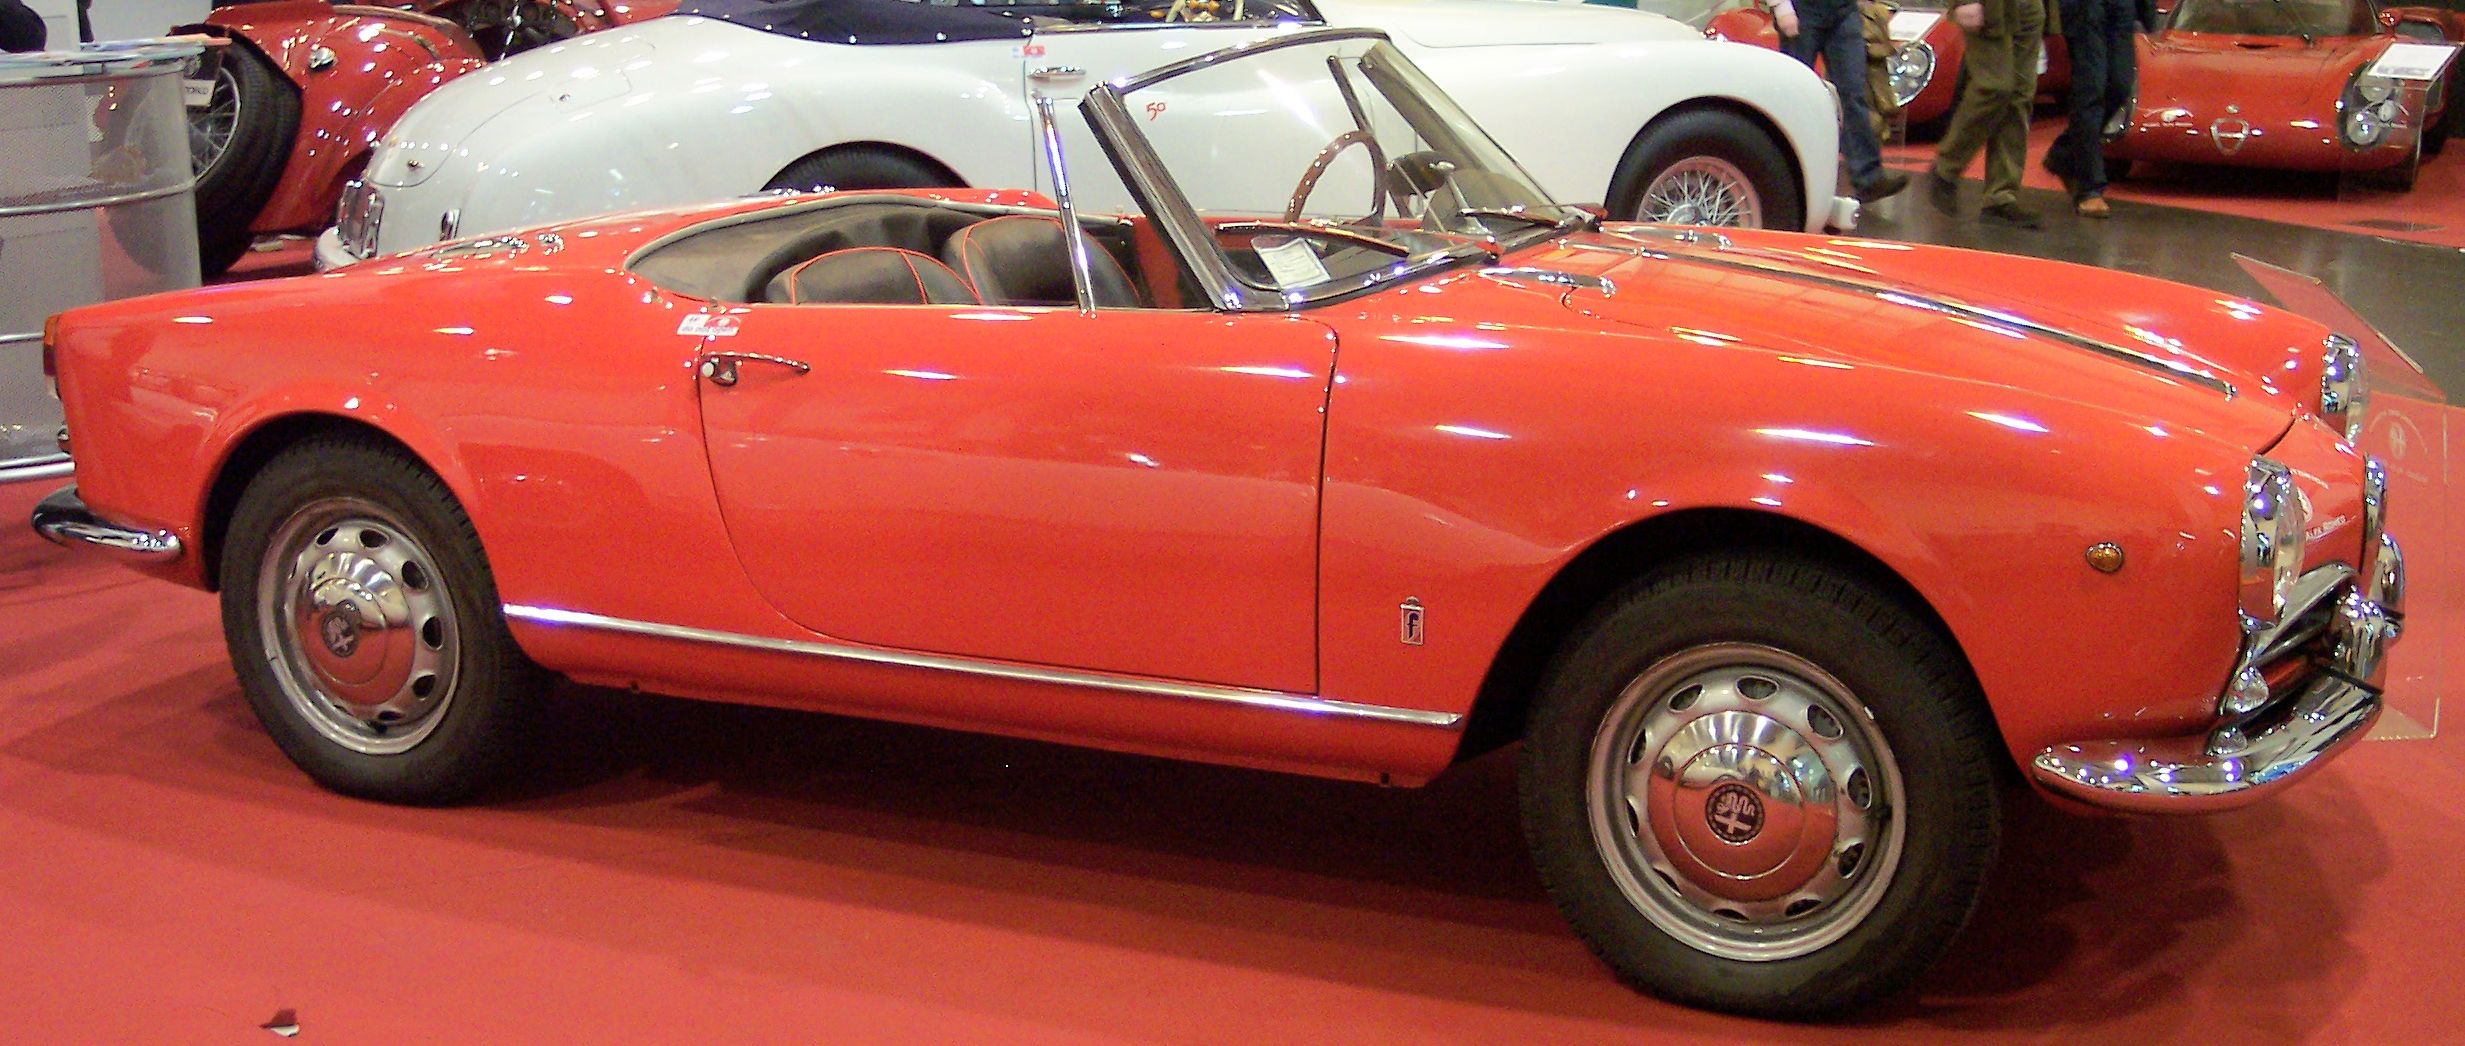 File:Alfa Romeo Giulietta Spider Veloce 1960 red r TCE.jpg ...